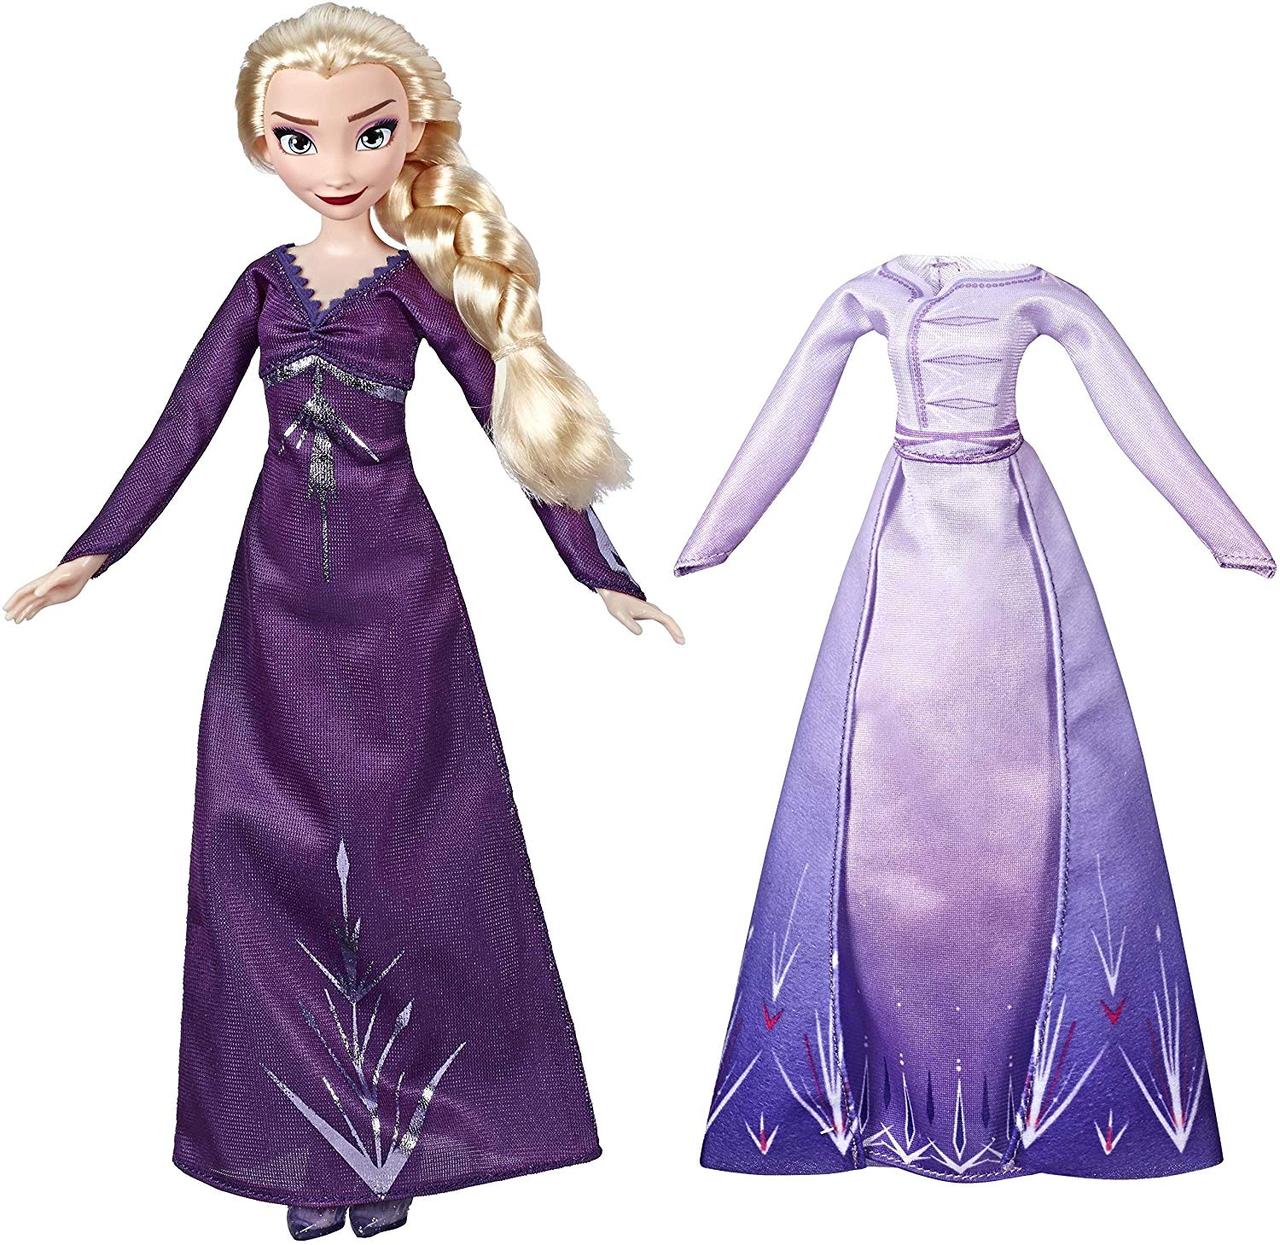 Холодне серце 2 вбрання і лялька Ельза Дісней Disney Frozen 2 Elsa Hasbro